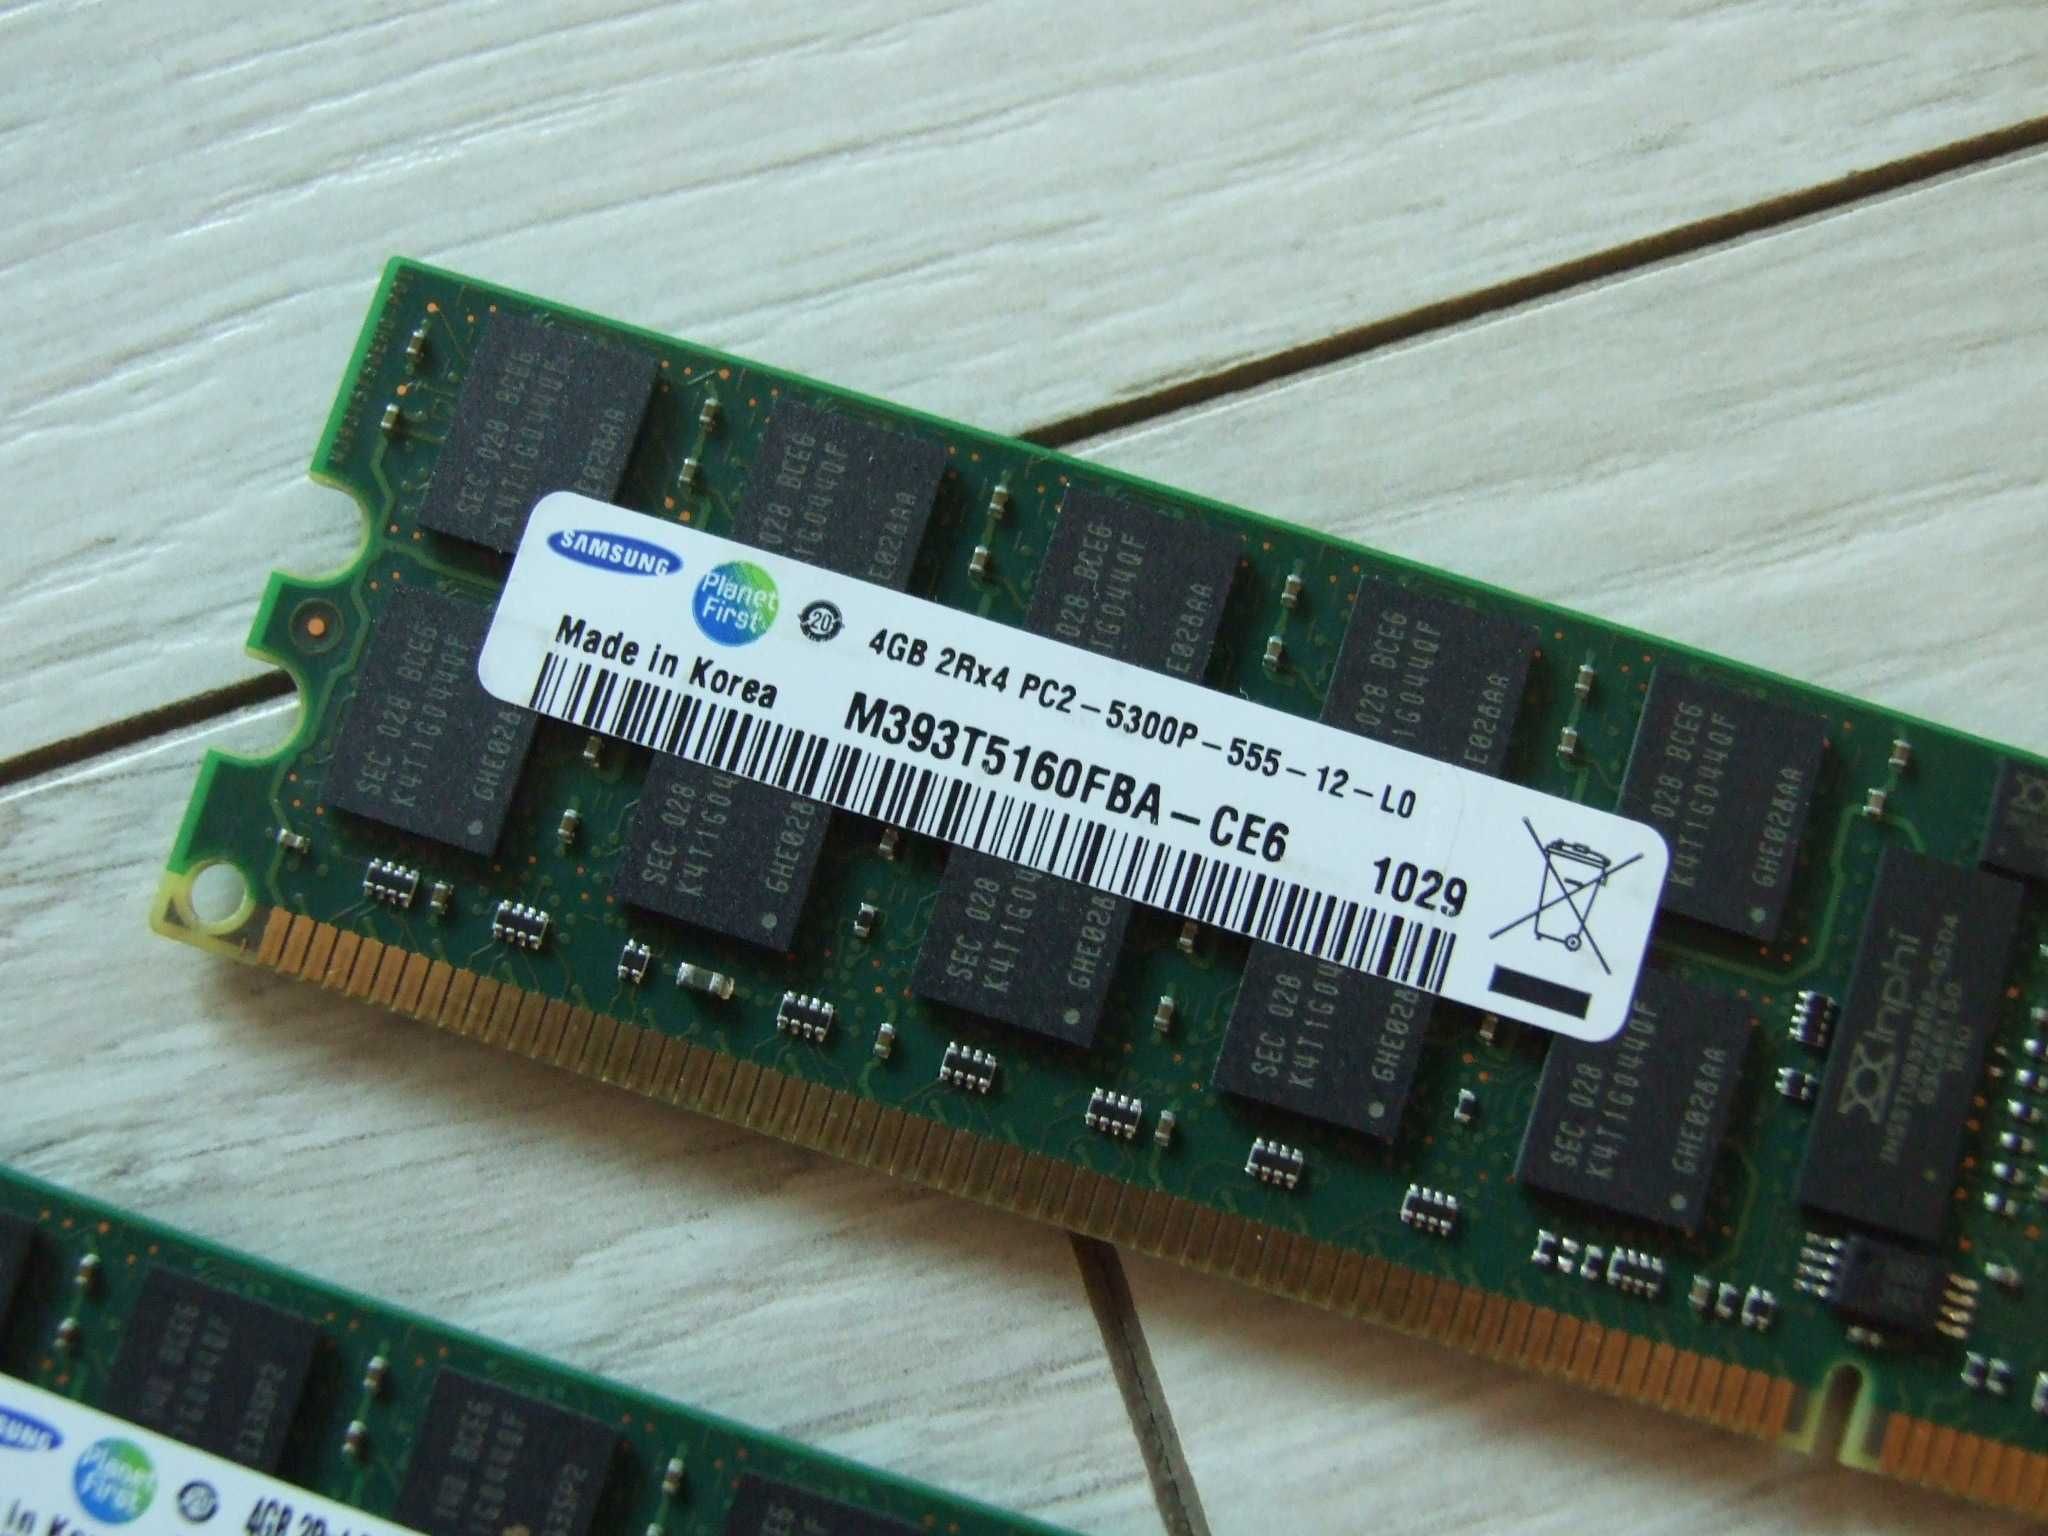 Pamięć Samsung 2x 4GB 2Rx4 PC2-5300P-555-12-L0